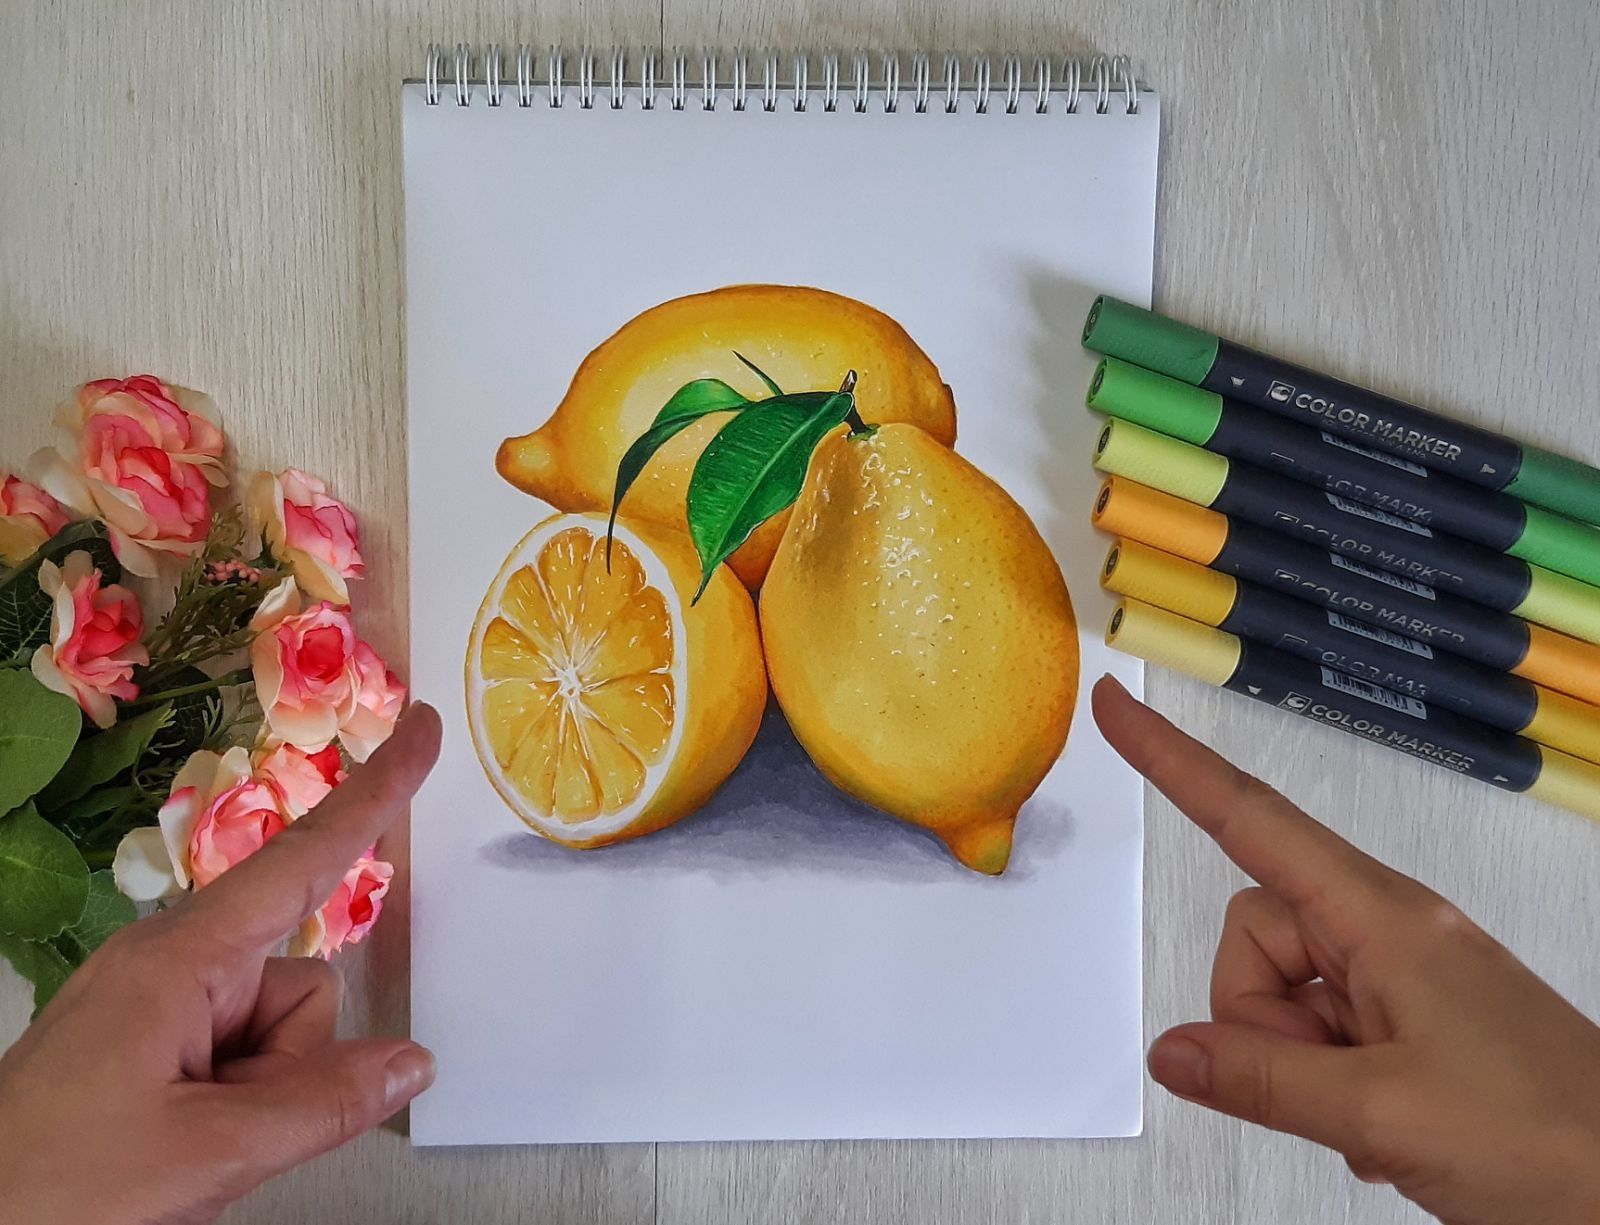 Рисую арты маркерами, Грю, леденец, лимон, ананас, лимонад